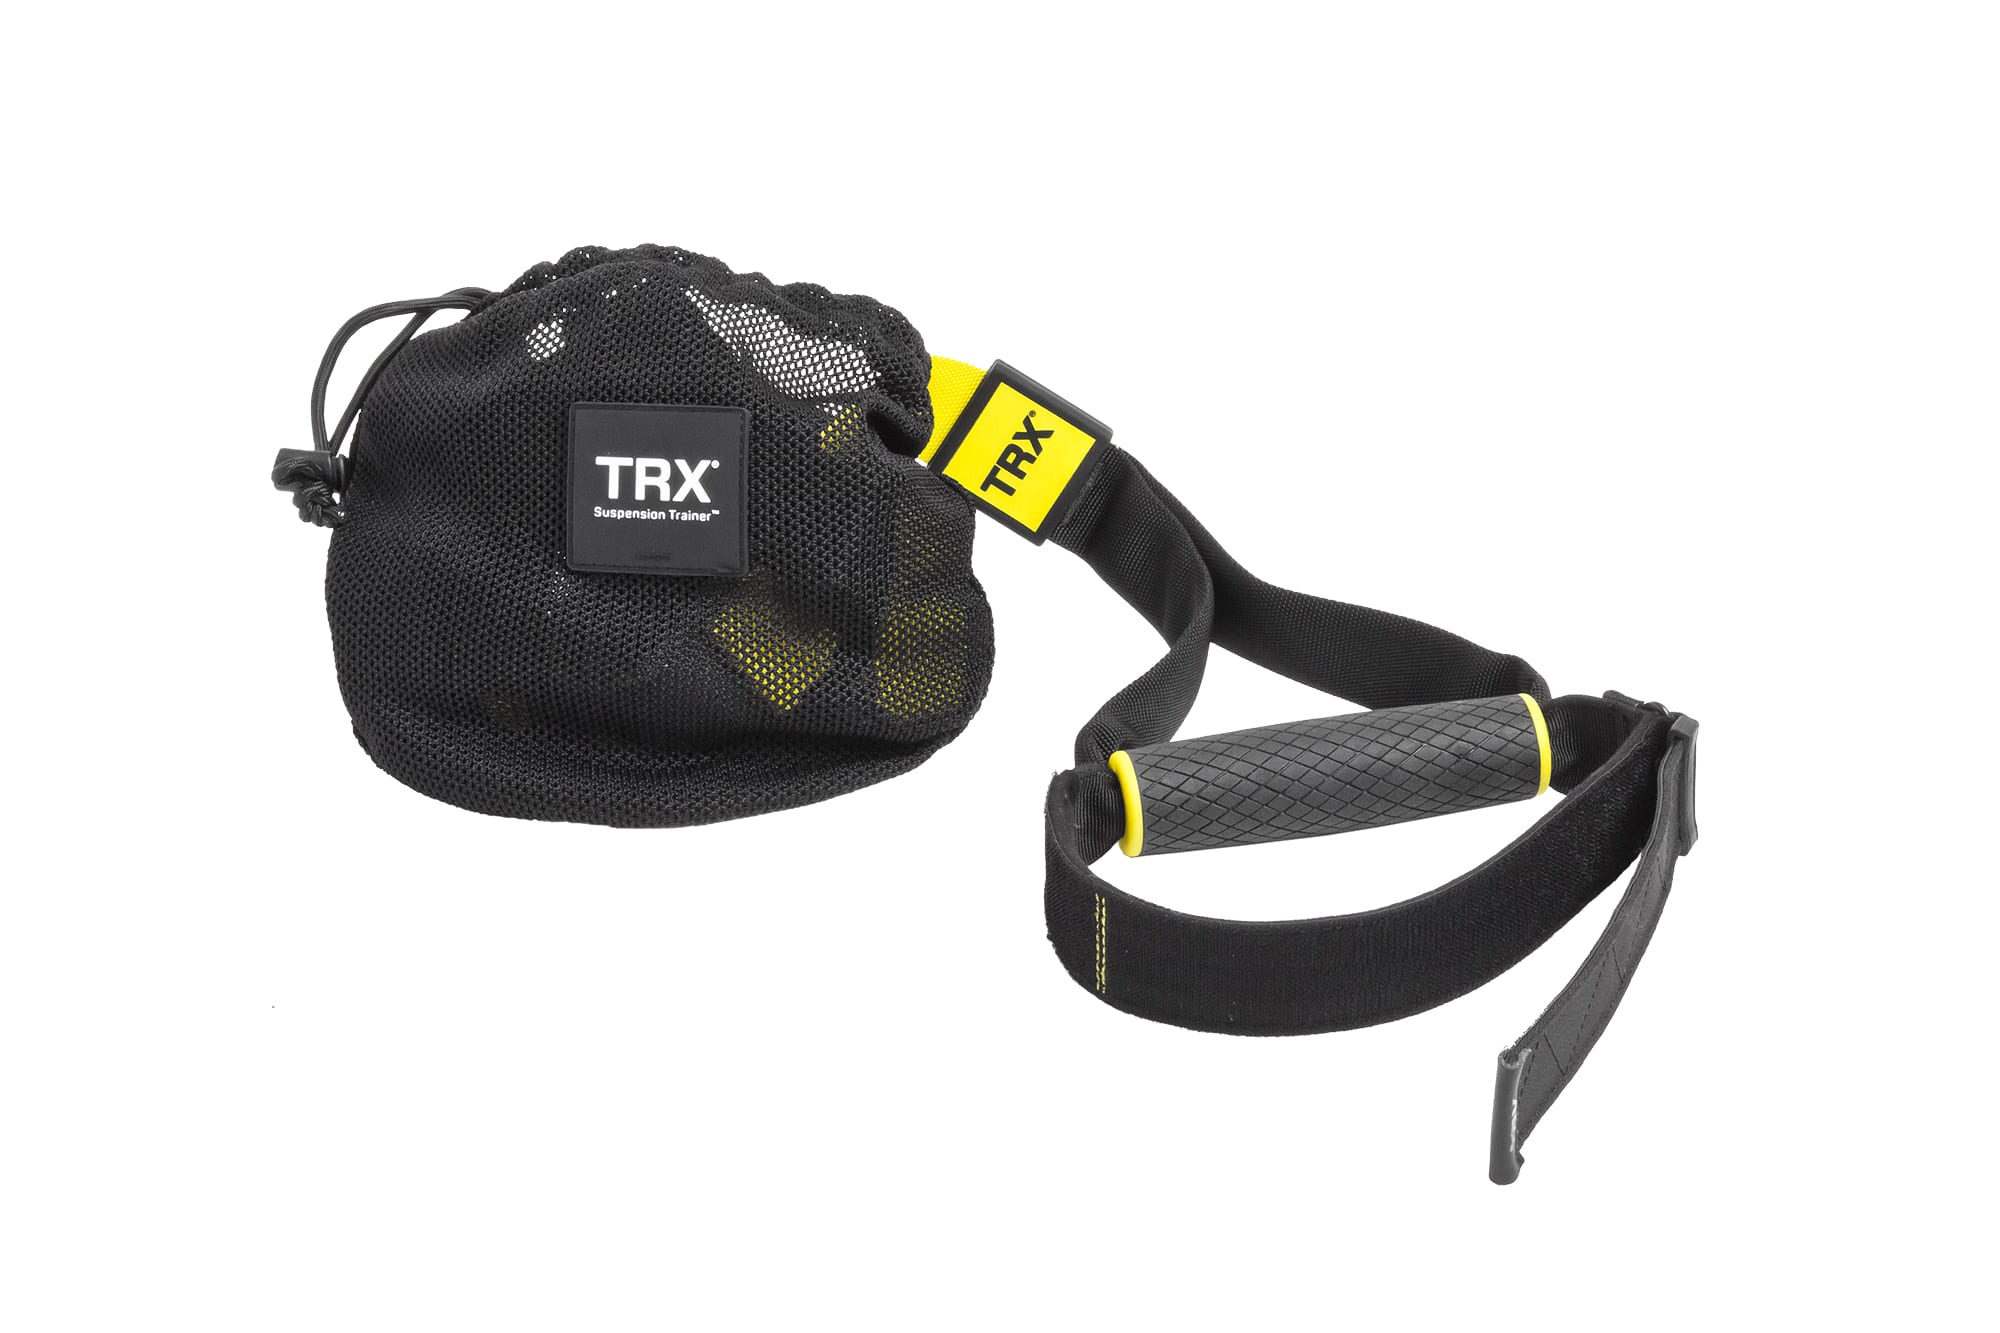 Trx script. Петли TRX Pro 4. TRX zr415. Петли TRX Club Pack. TRX Pro Suspension Training Kit.